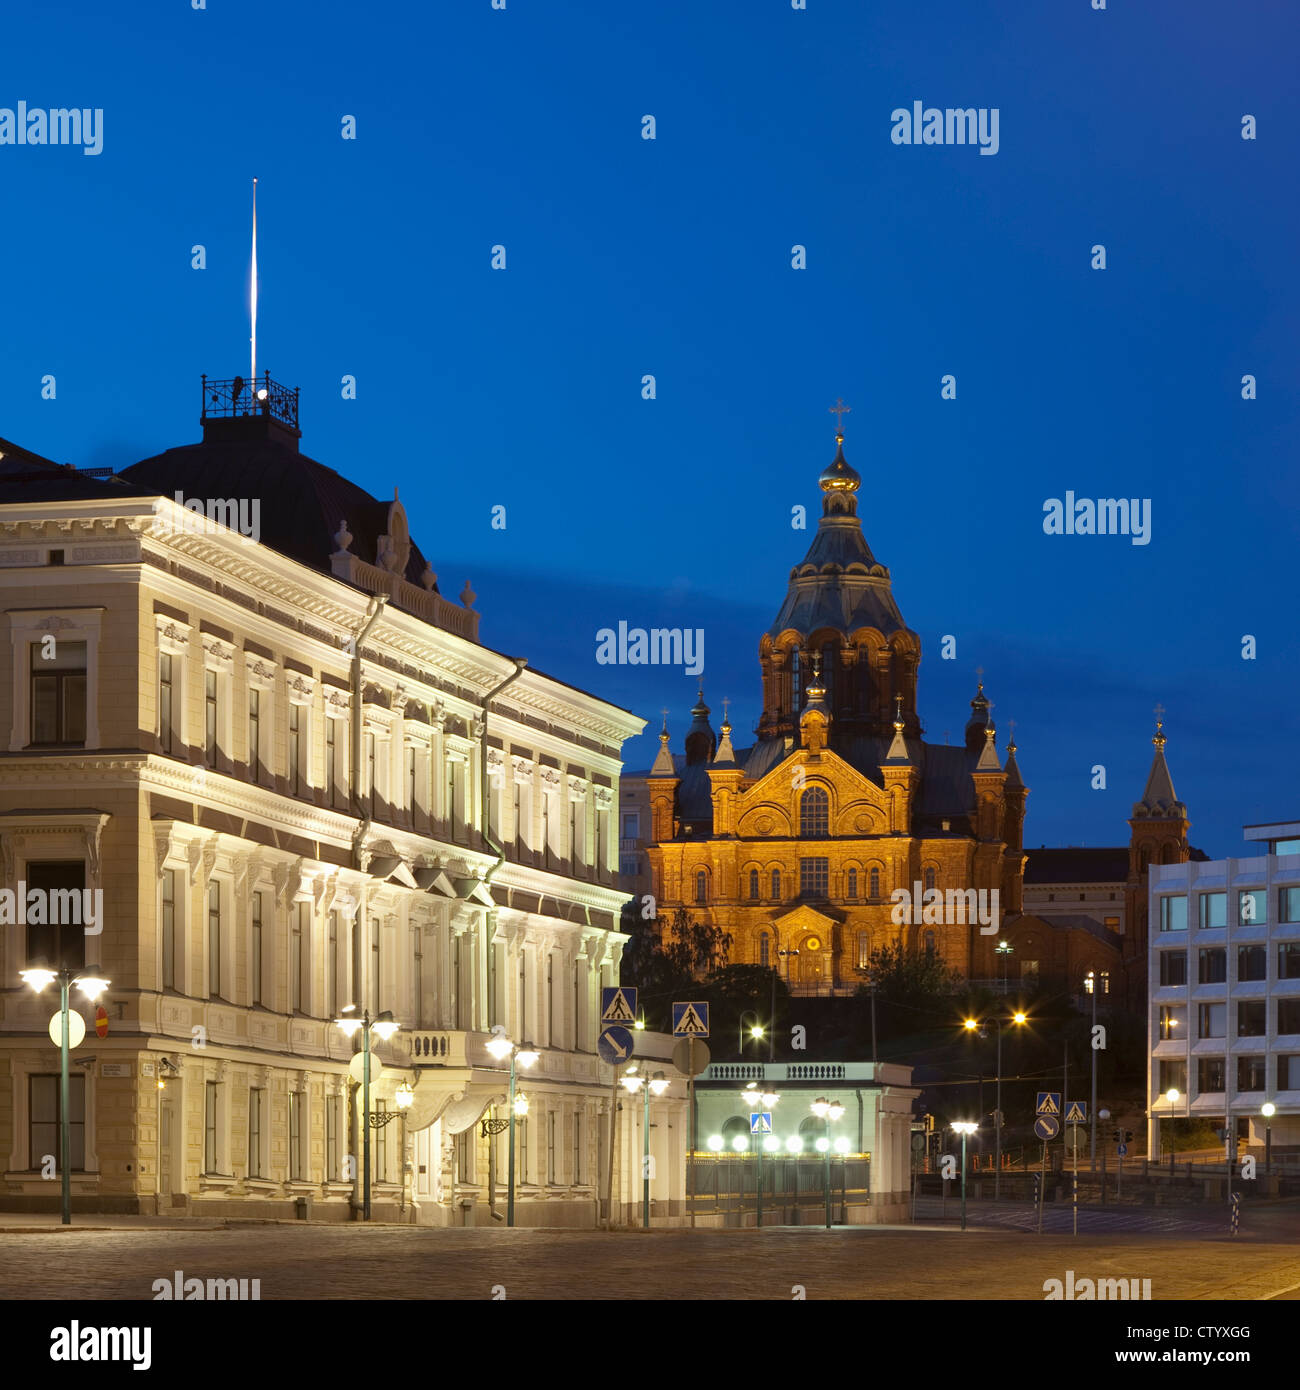 Reich verzierte Gebäude nachts beleuchtet Stockfoto